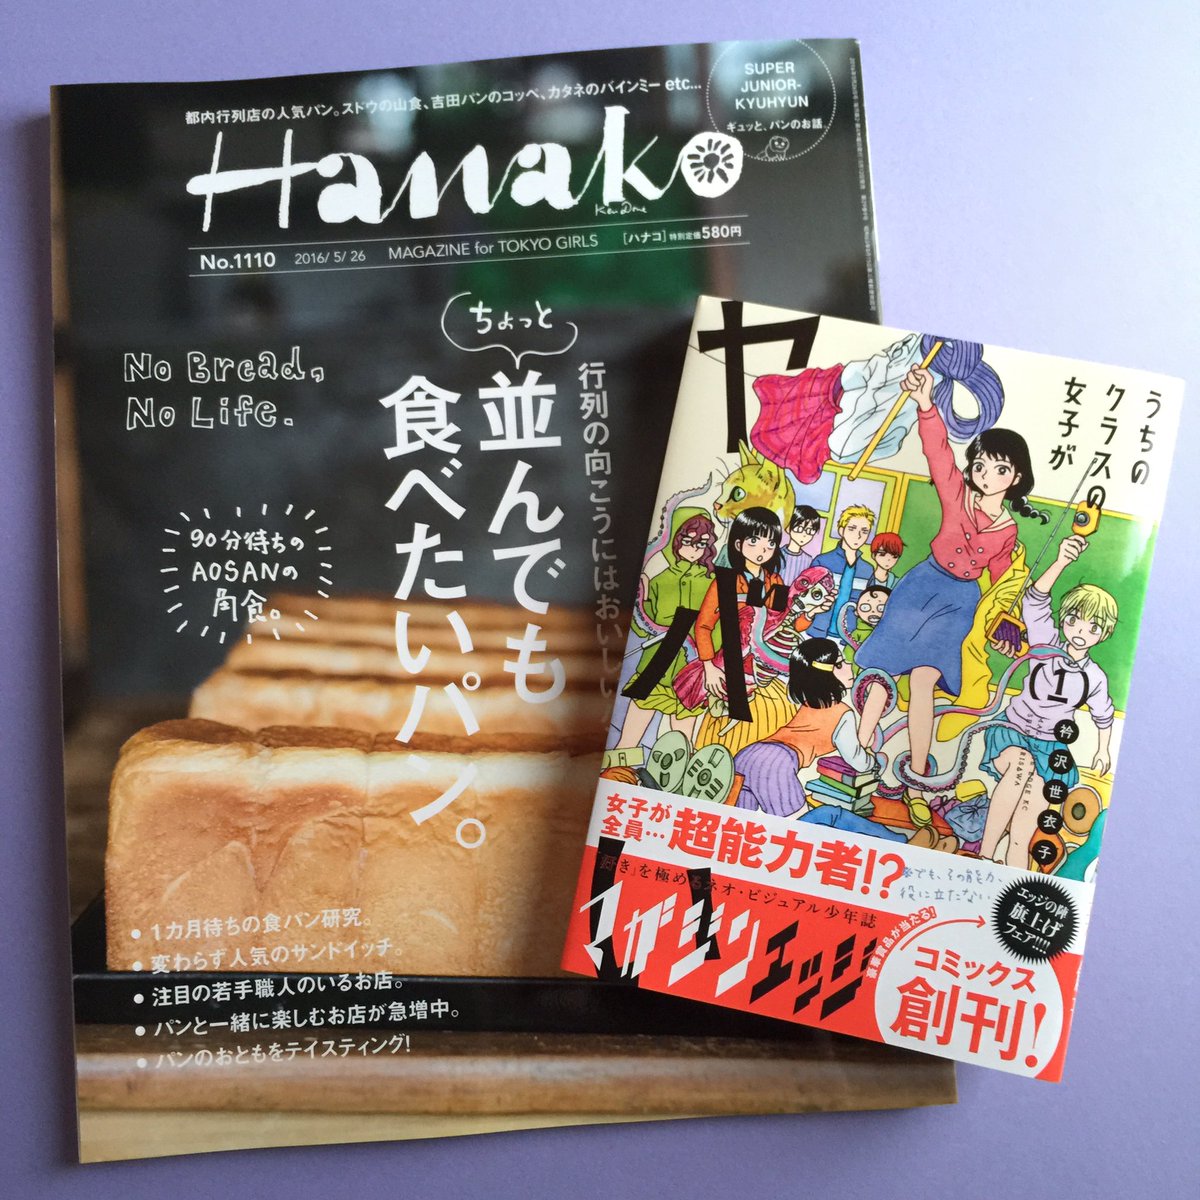 Hanako最新号に「うちのクラスの女子がヤバい」紹介されております。嬉しいです！パン特集はどれも美味しそうなお店ばかり！ 